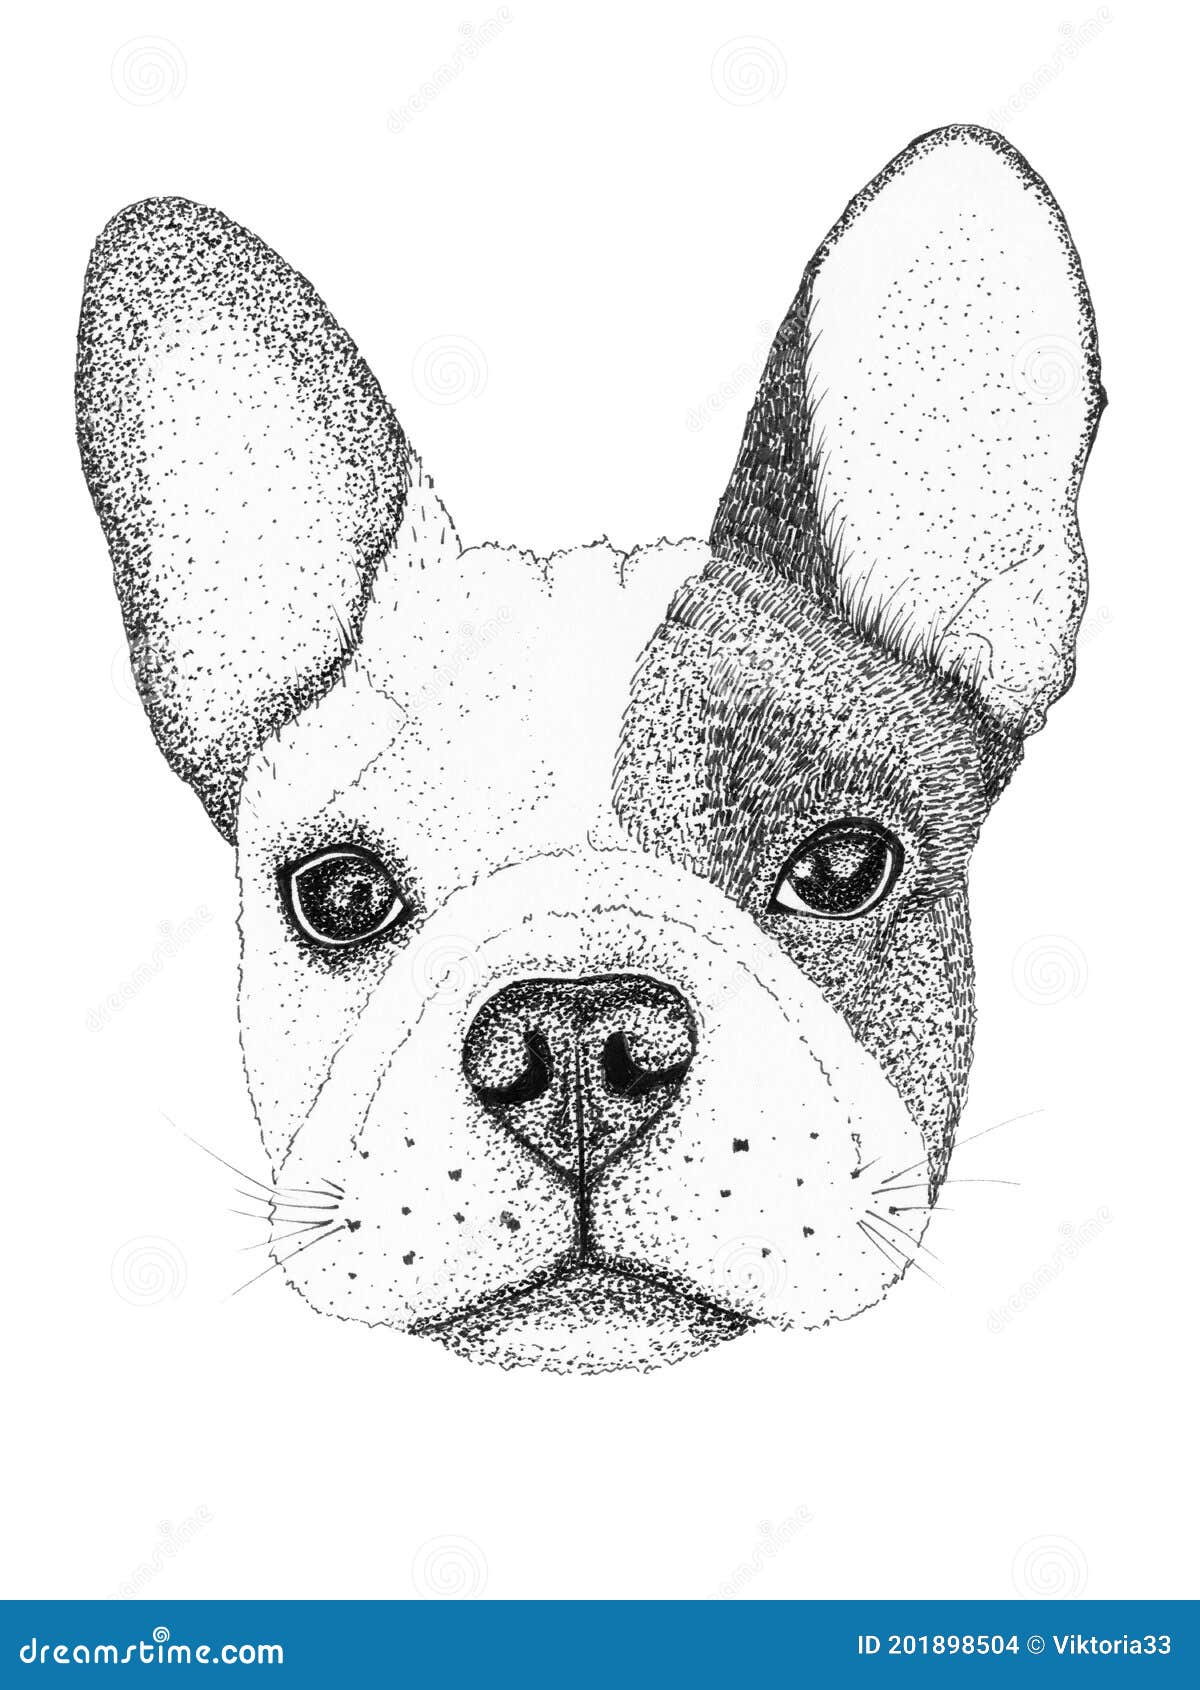 Impresión De Perro En Dibujo De Bulldog Francés, Pug, Tonos Neutros, Animal  Print, Regalo Para Amantes De Los Perros, Regalo De Inauguración De La |  